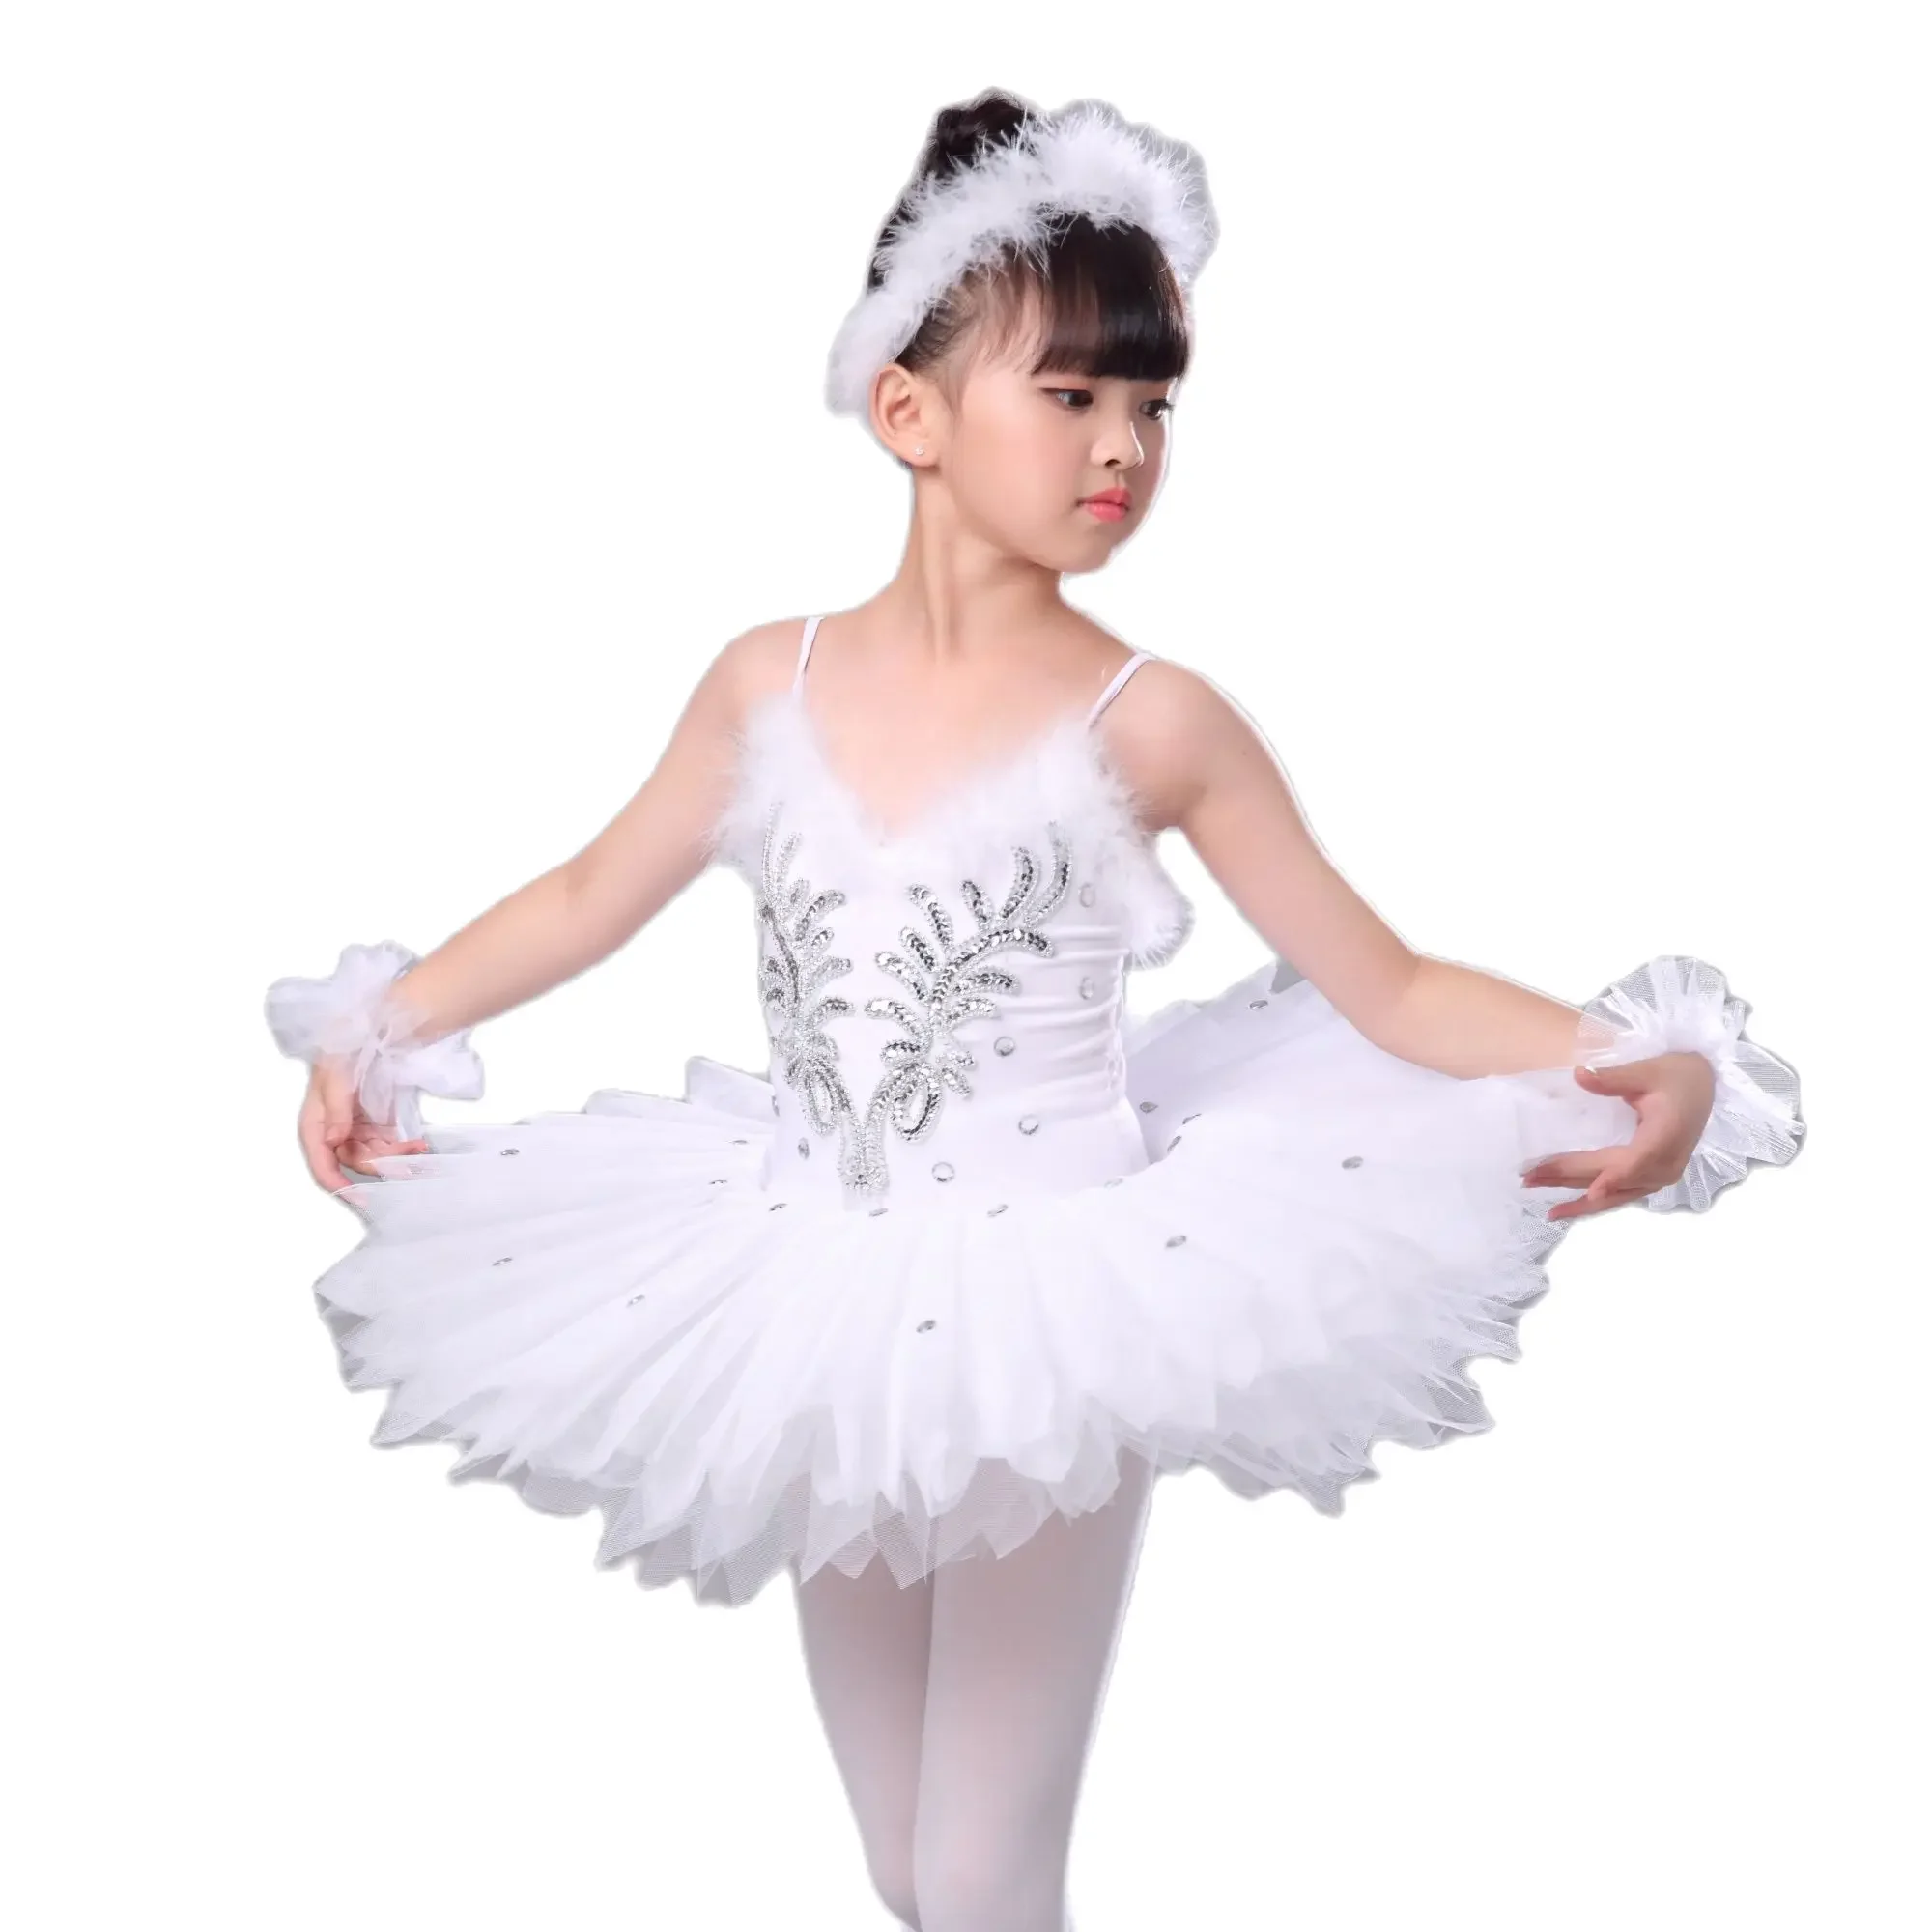 

Детское балетное платье-пачка с изображением лебедя и озера